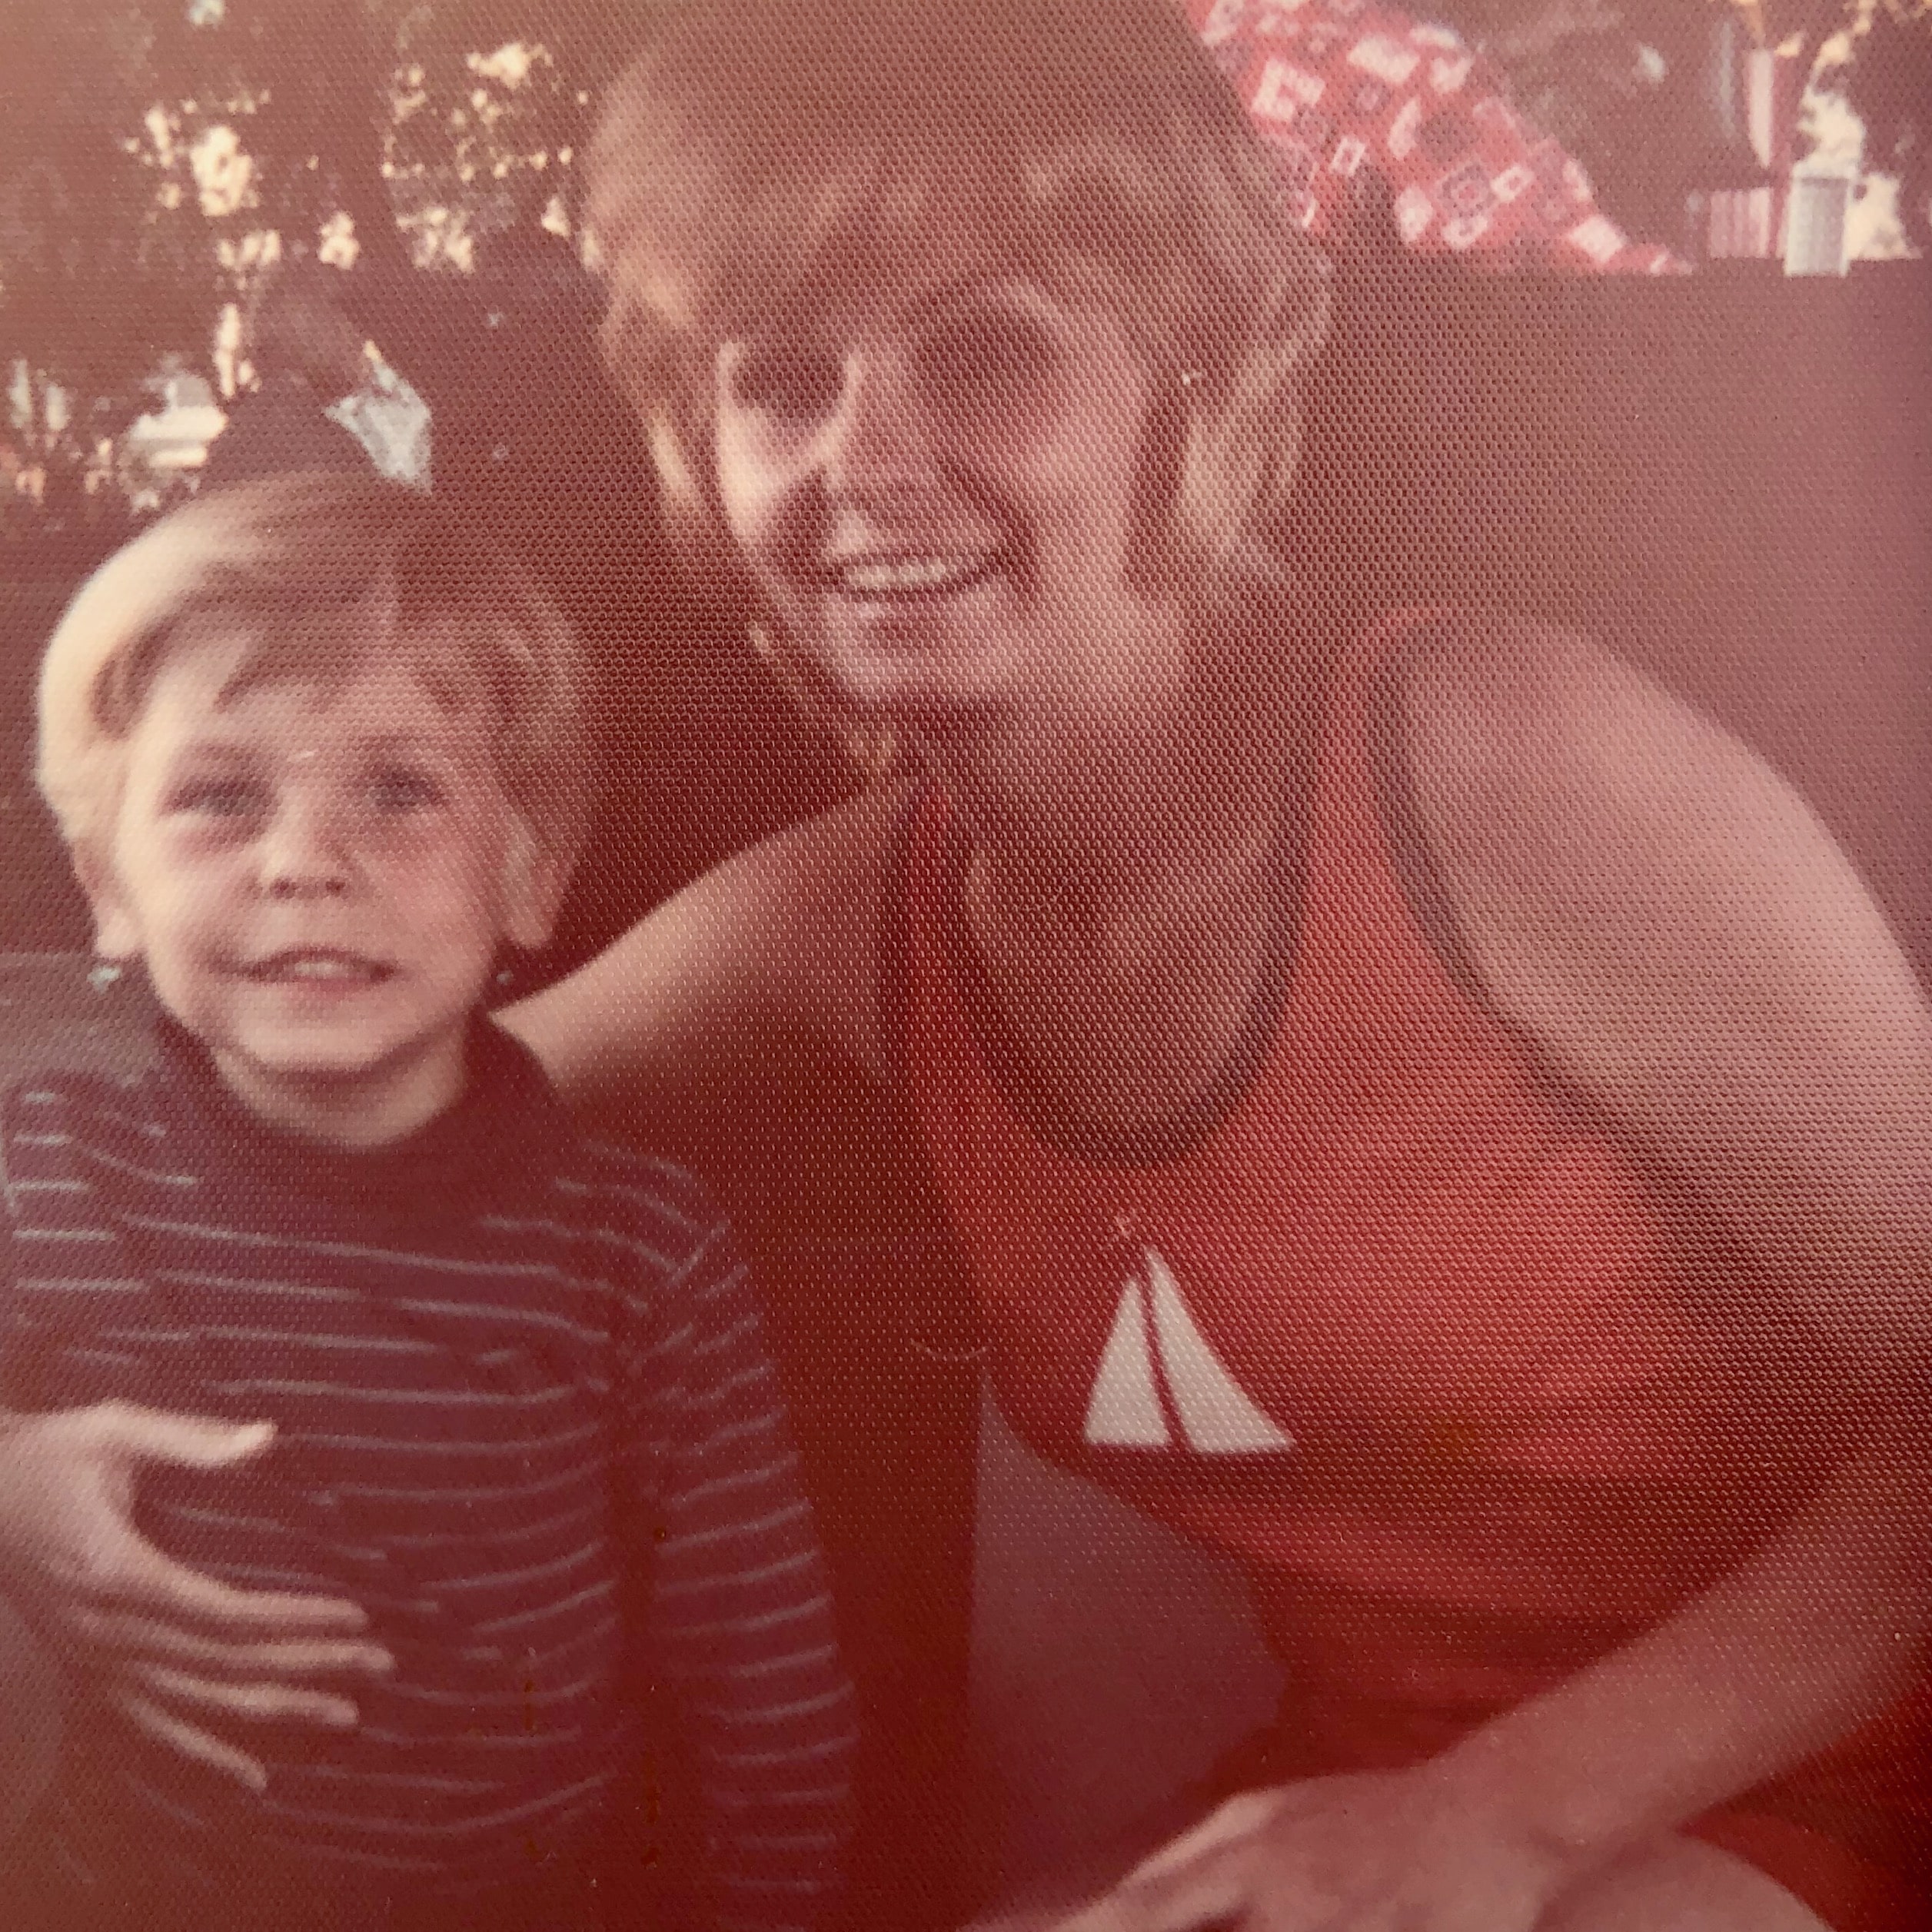 Mom and Me 1972